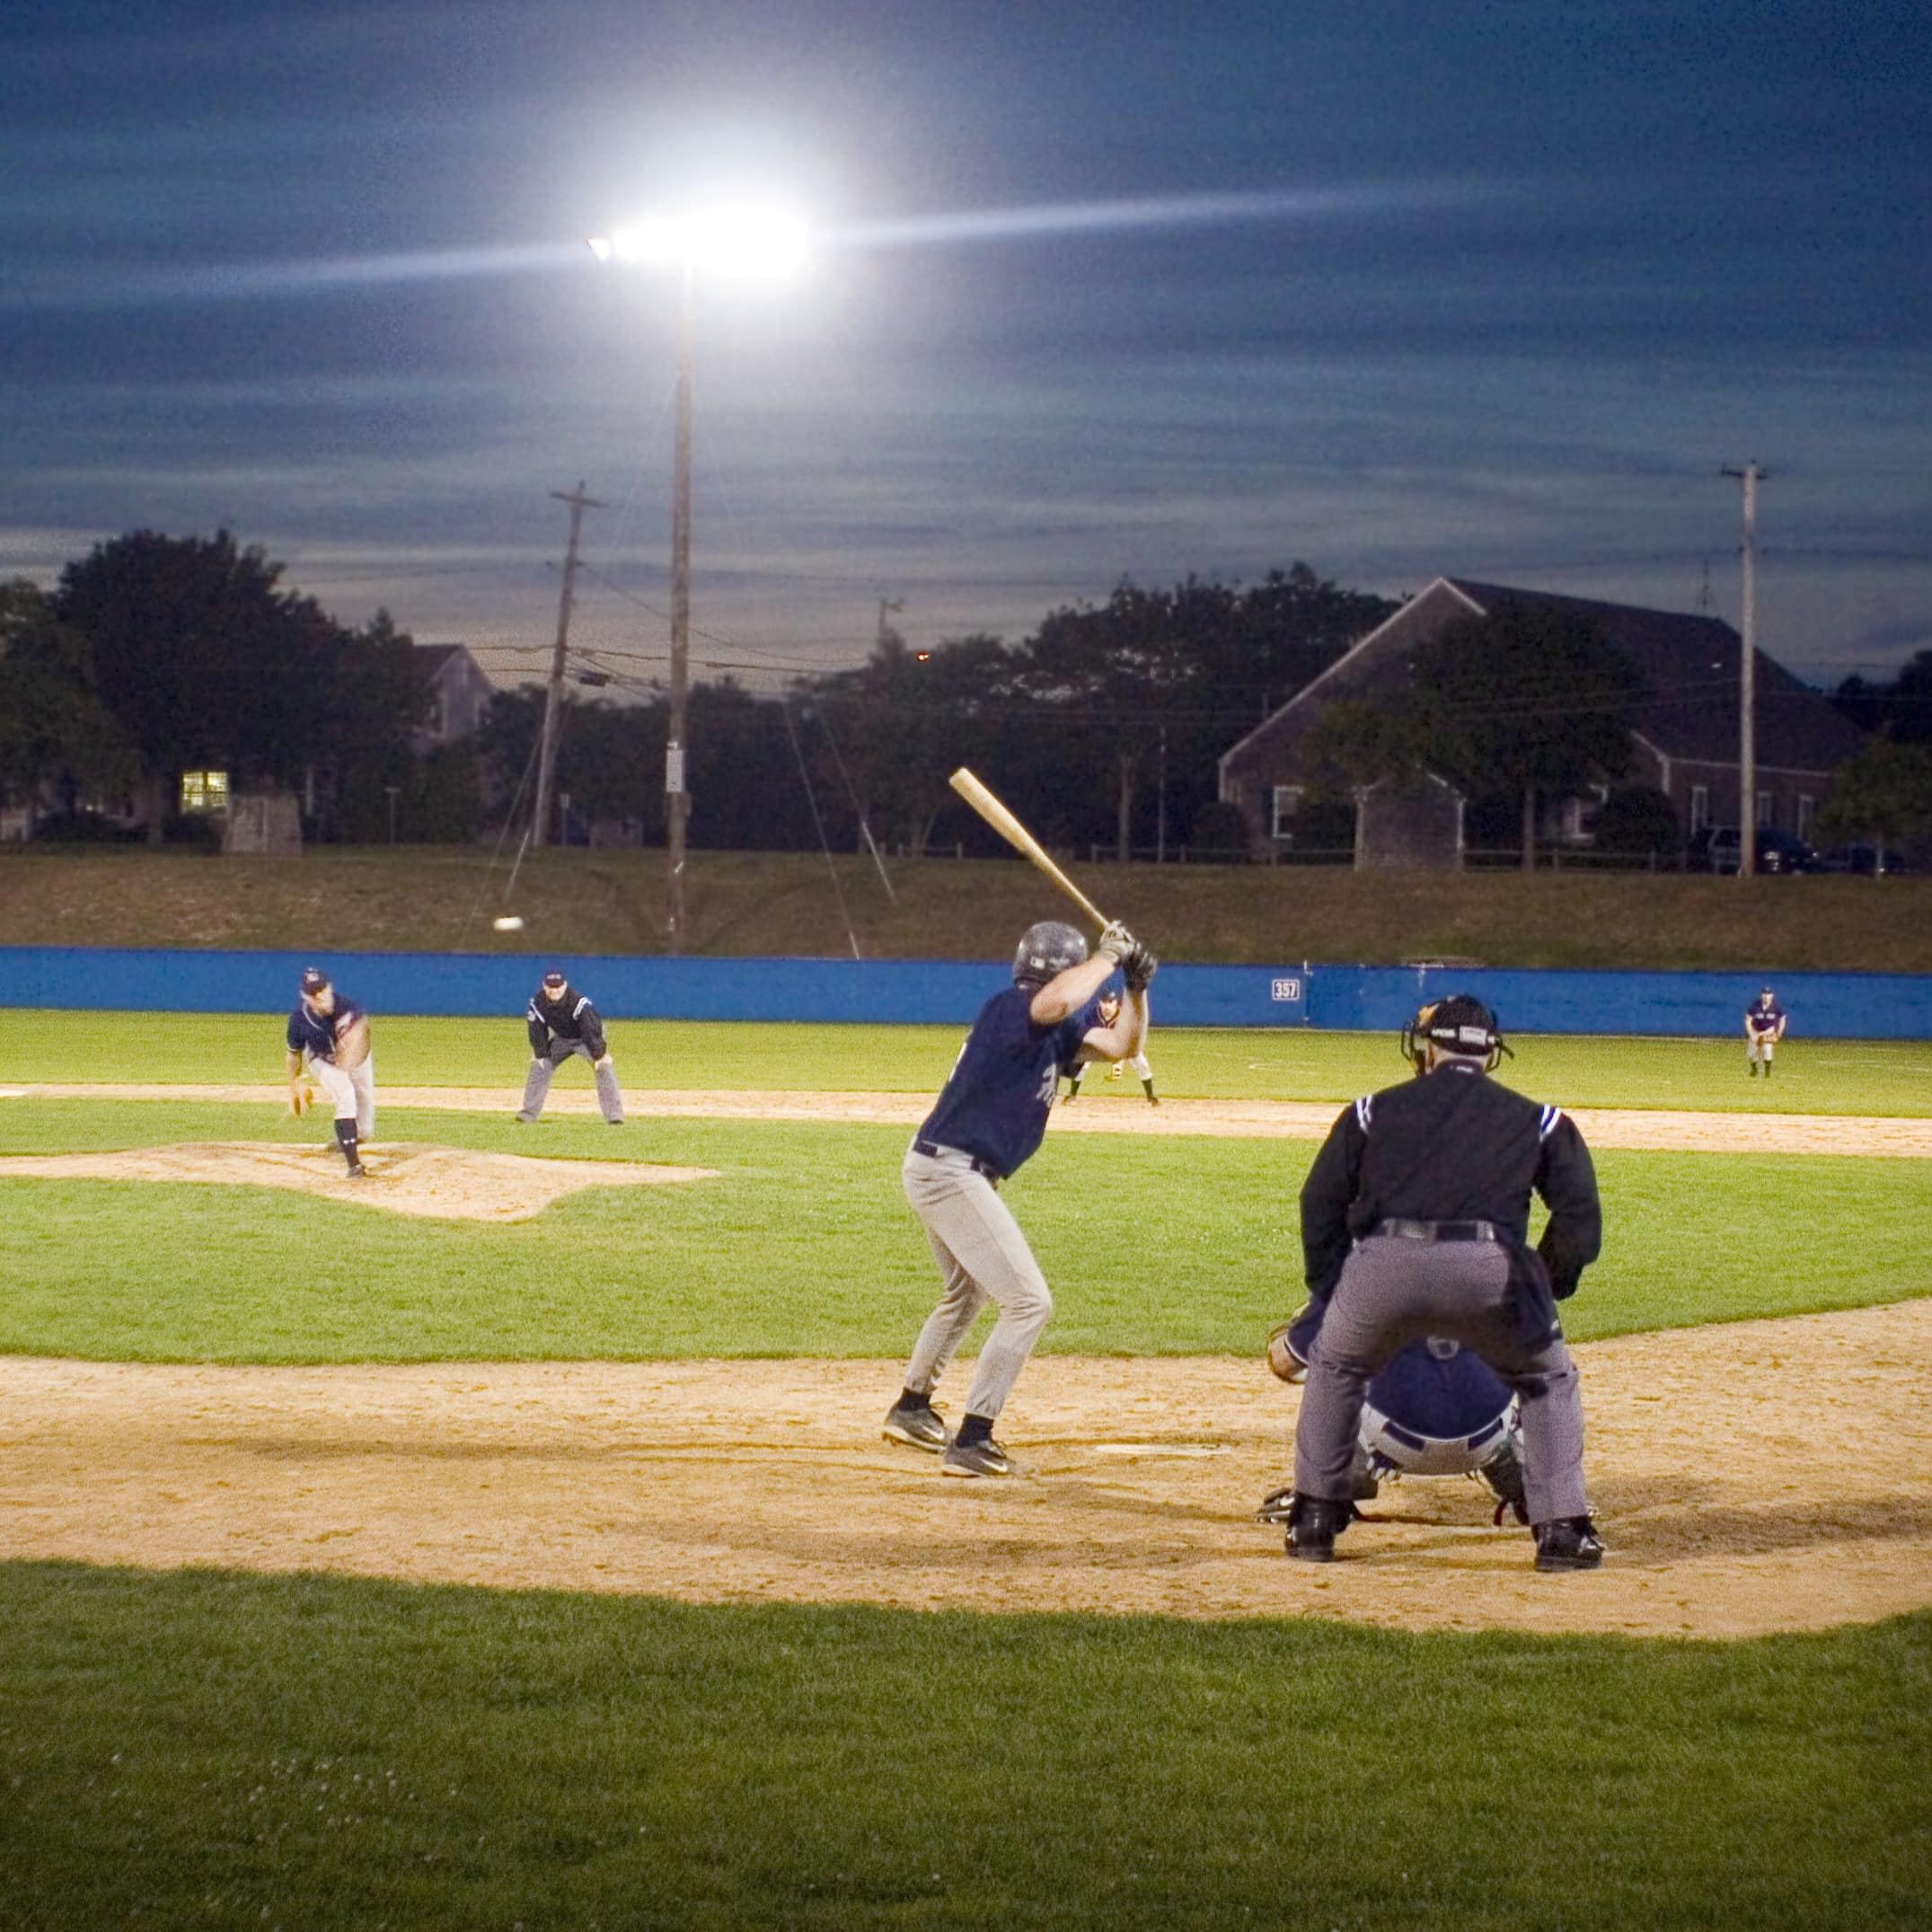 Baseball game at Chatham, Cape Cod